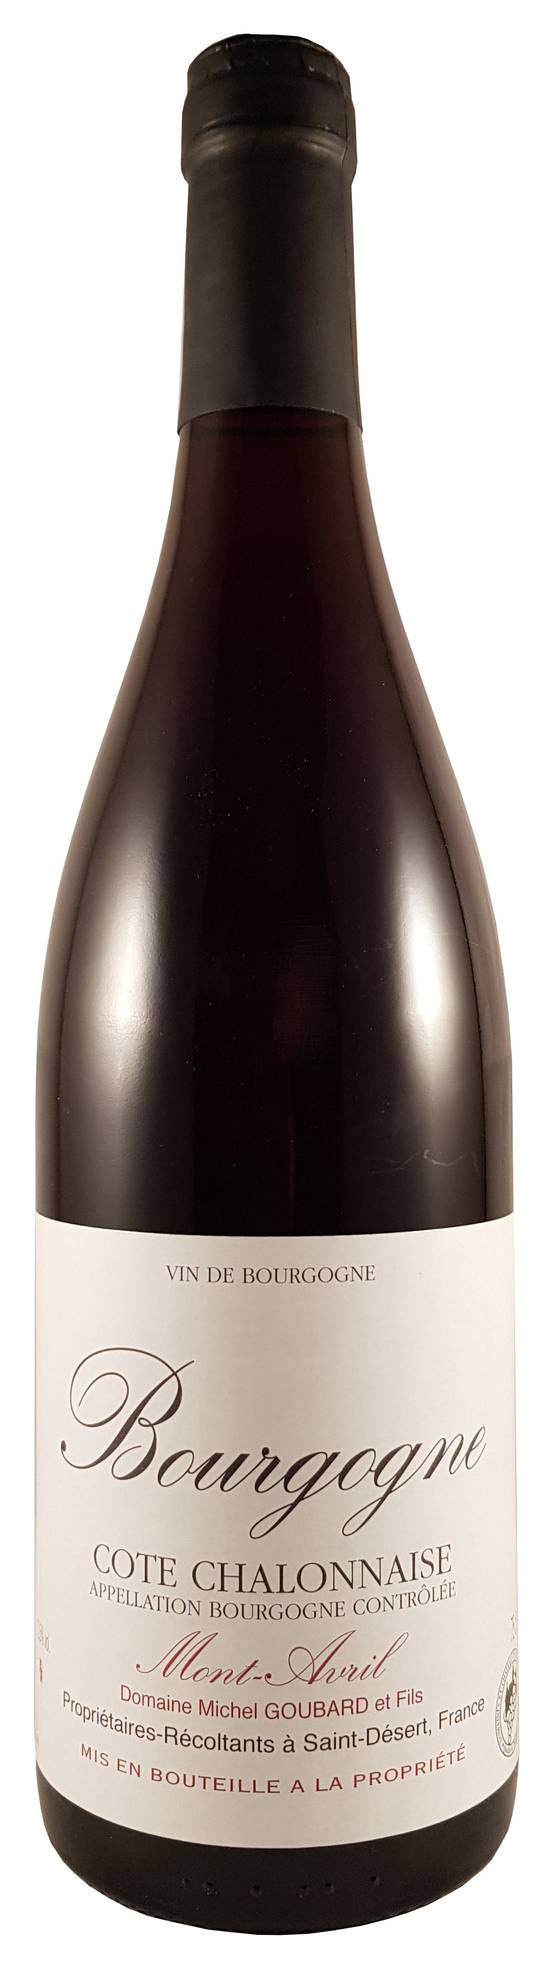 Domaine Michel Goubard et Fils - Vin rouge Bourgogne cote chalonnaise mont avril domestique (750 ml)